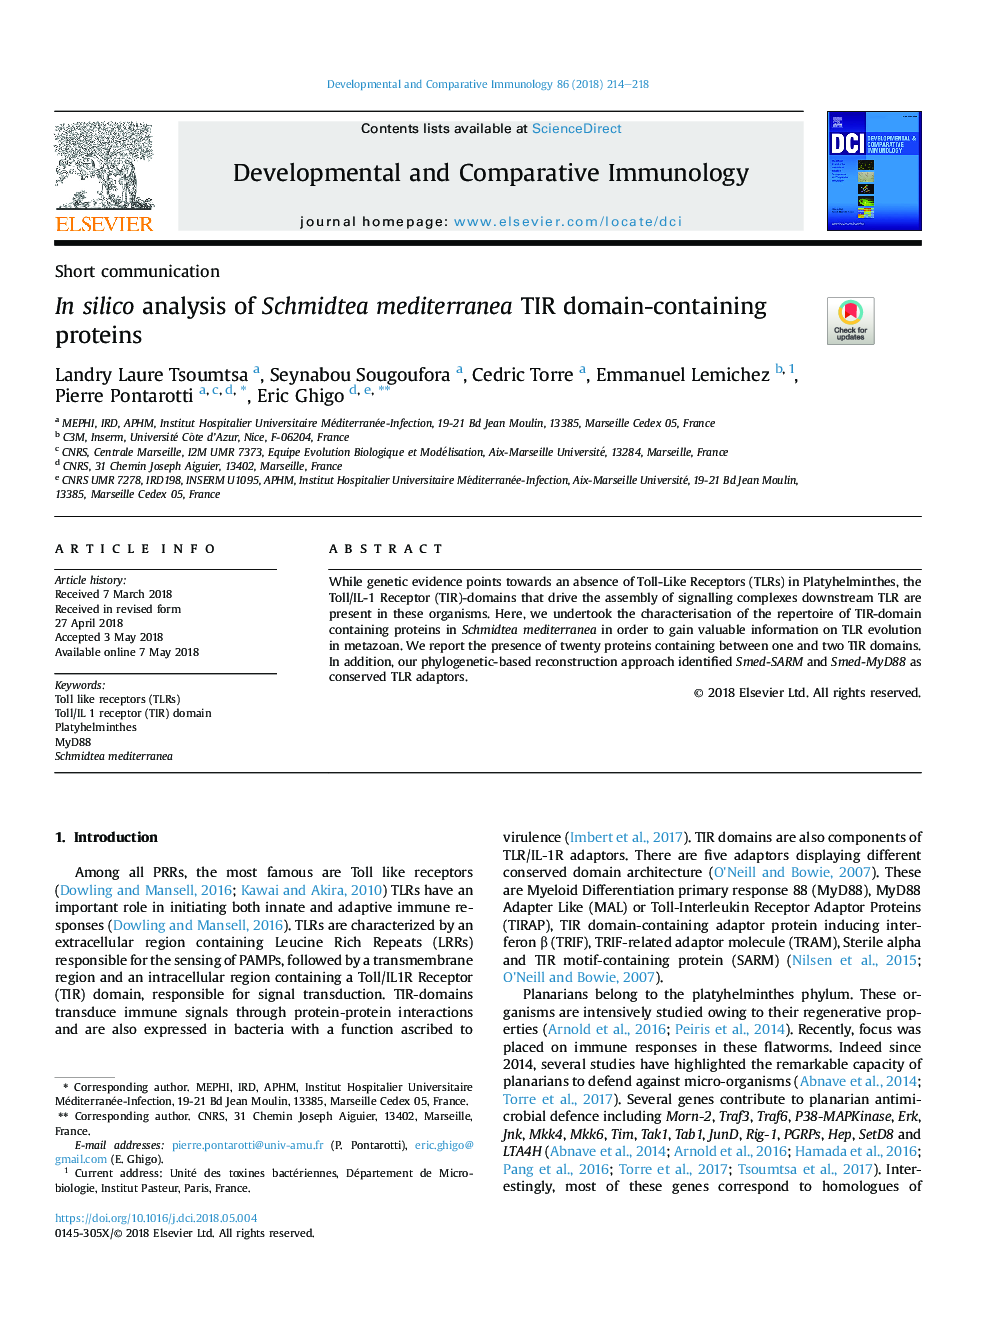 In silico analysis of Schmidtea mediterranea TIR domain-containing proteins